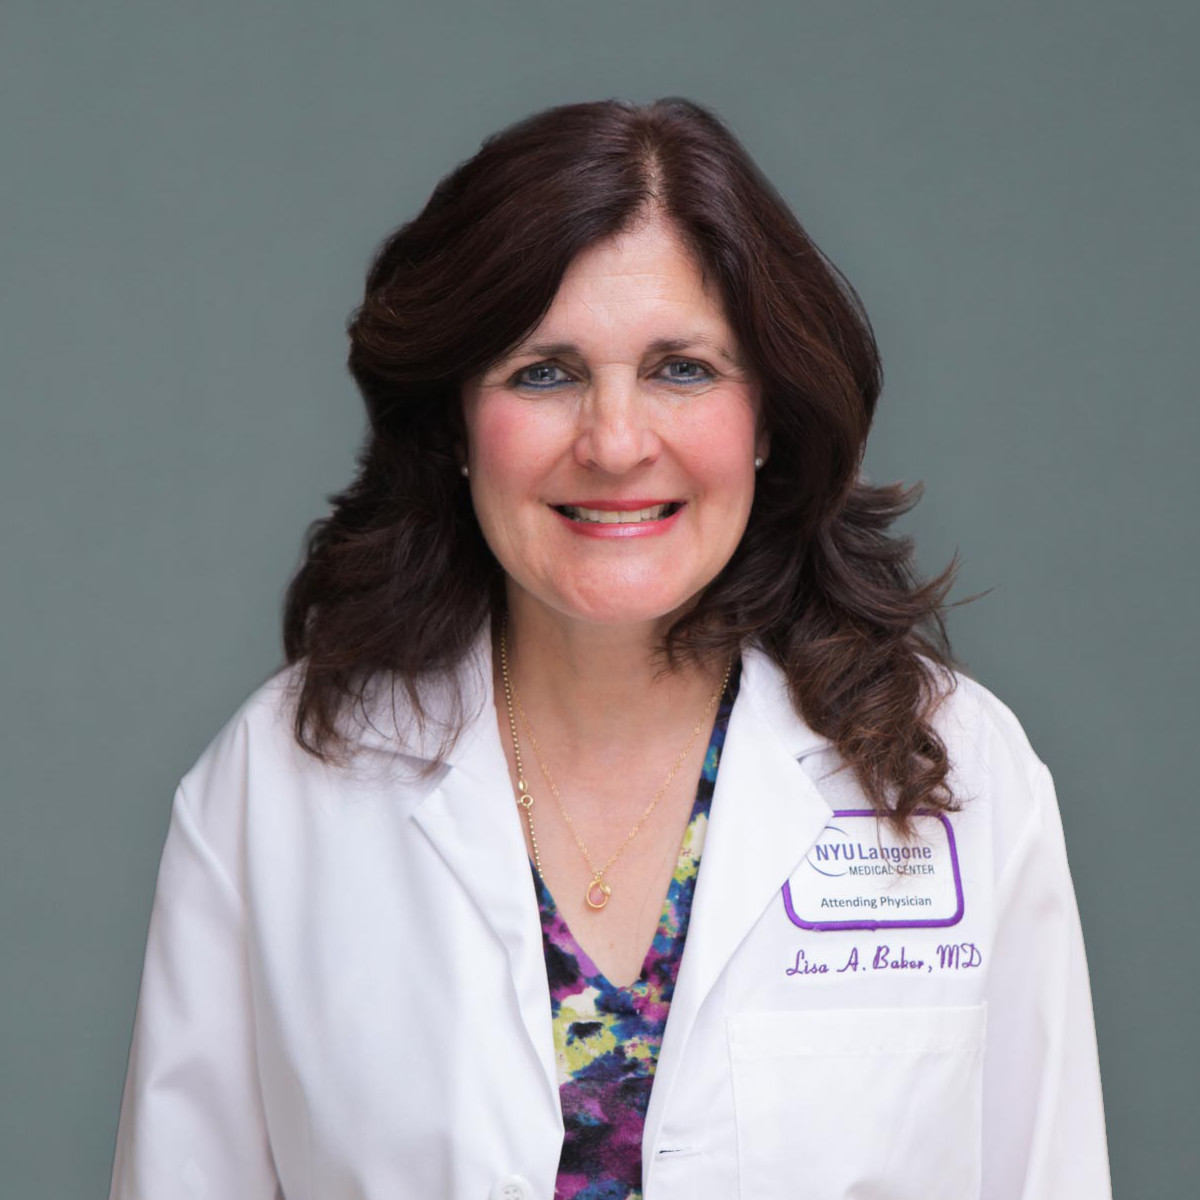 Lisa Baker,MD. Family Medicine